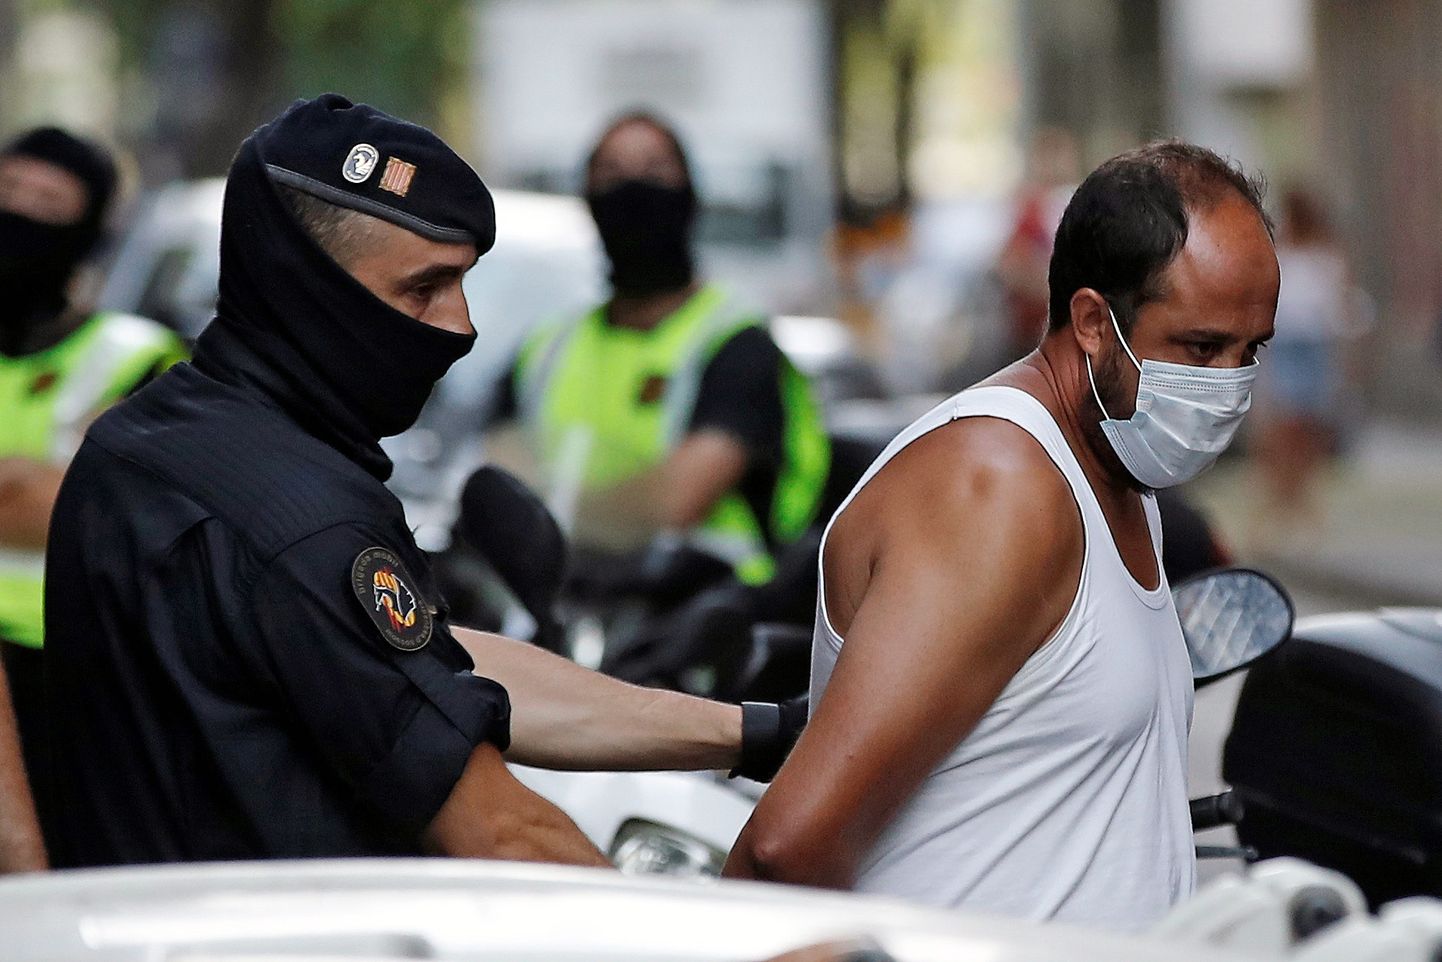 Arvatavate islamistide vastu korraldatud haarangu järel kinni peetud kahtlusaluse transportimine Barcelonas.